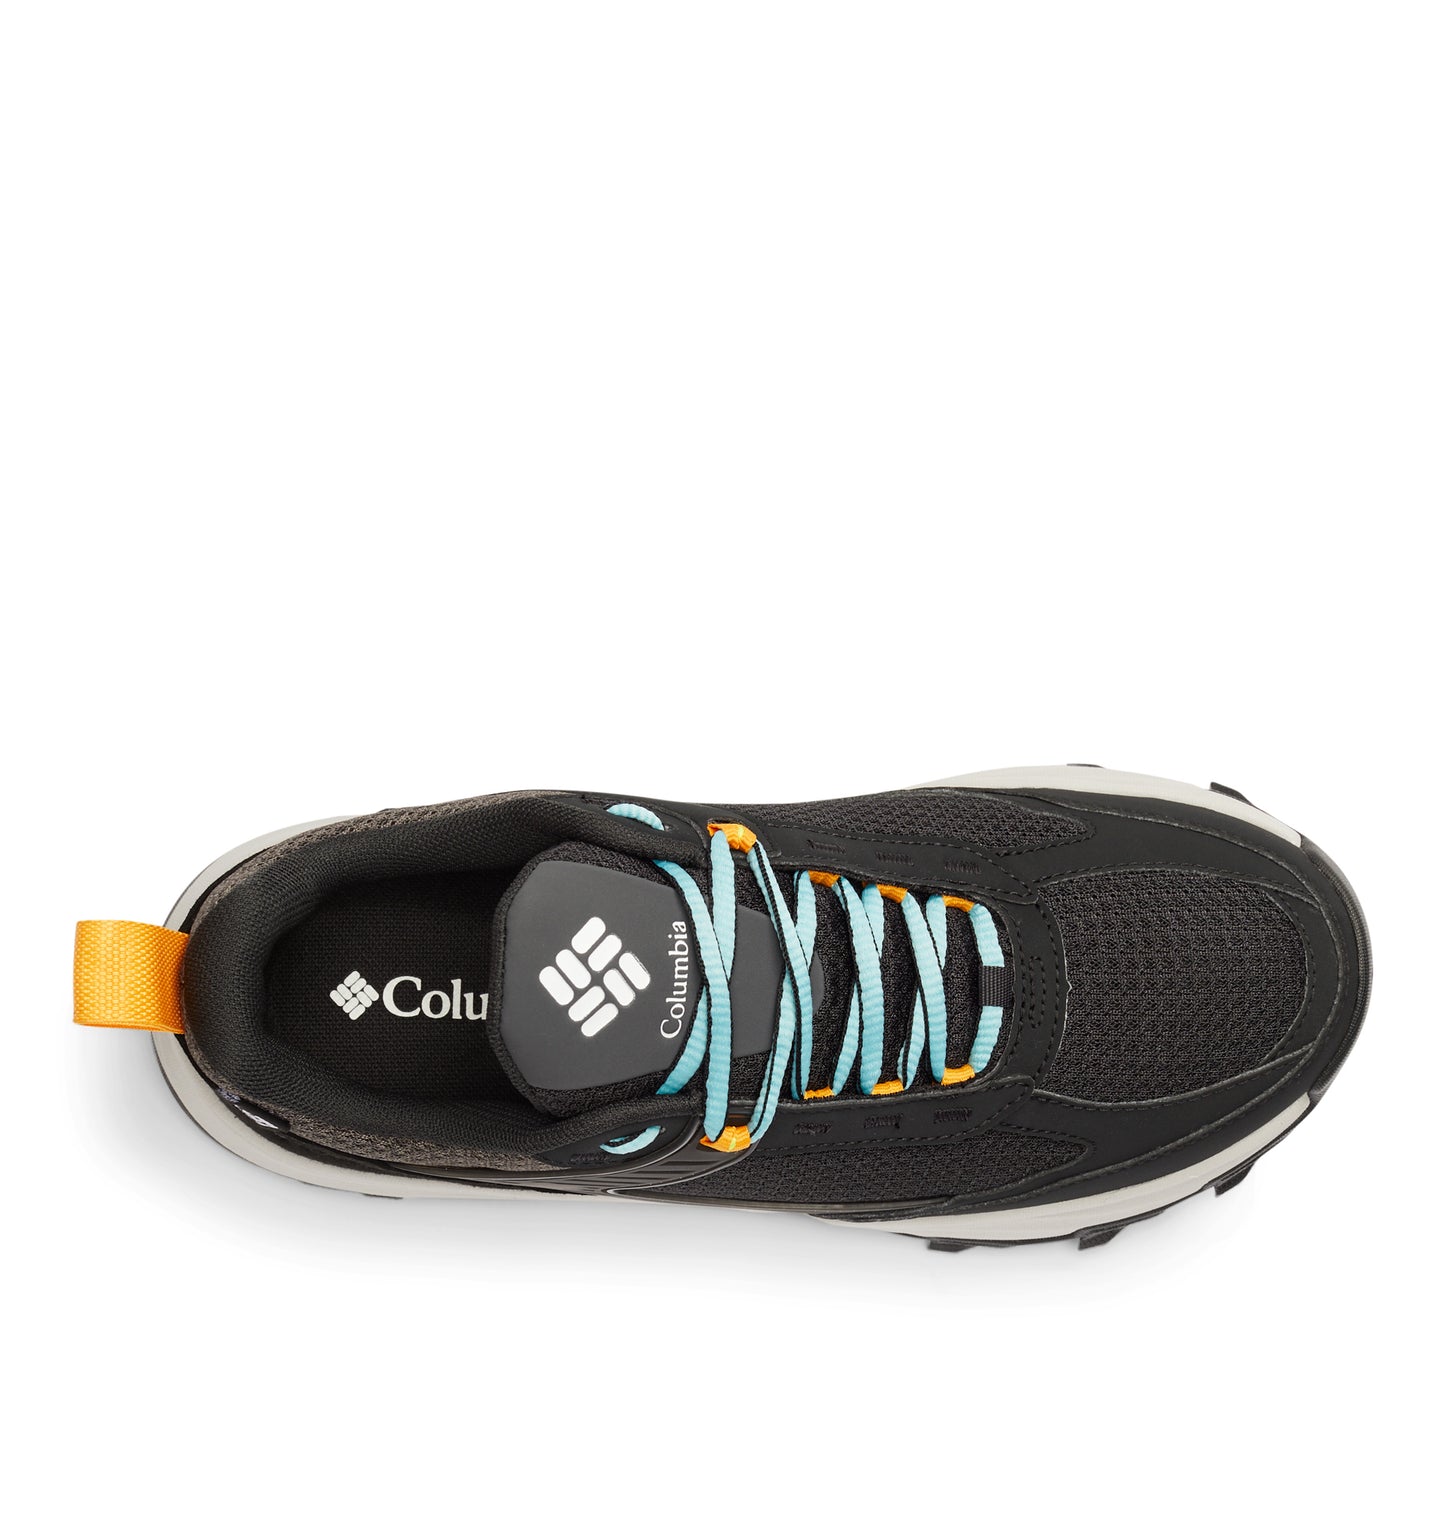 Women’s Hatana™ Max Waterproof Multi-Sport Shoe